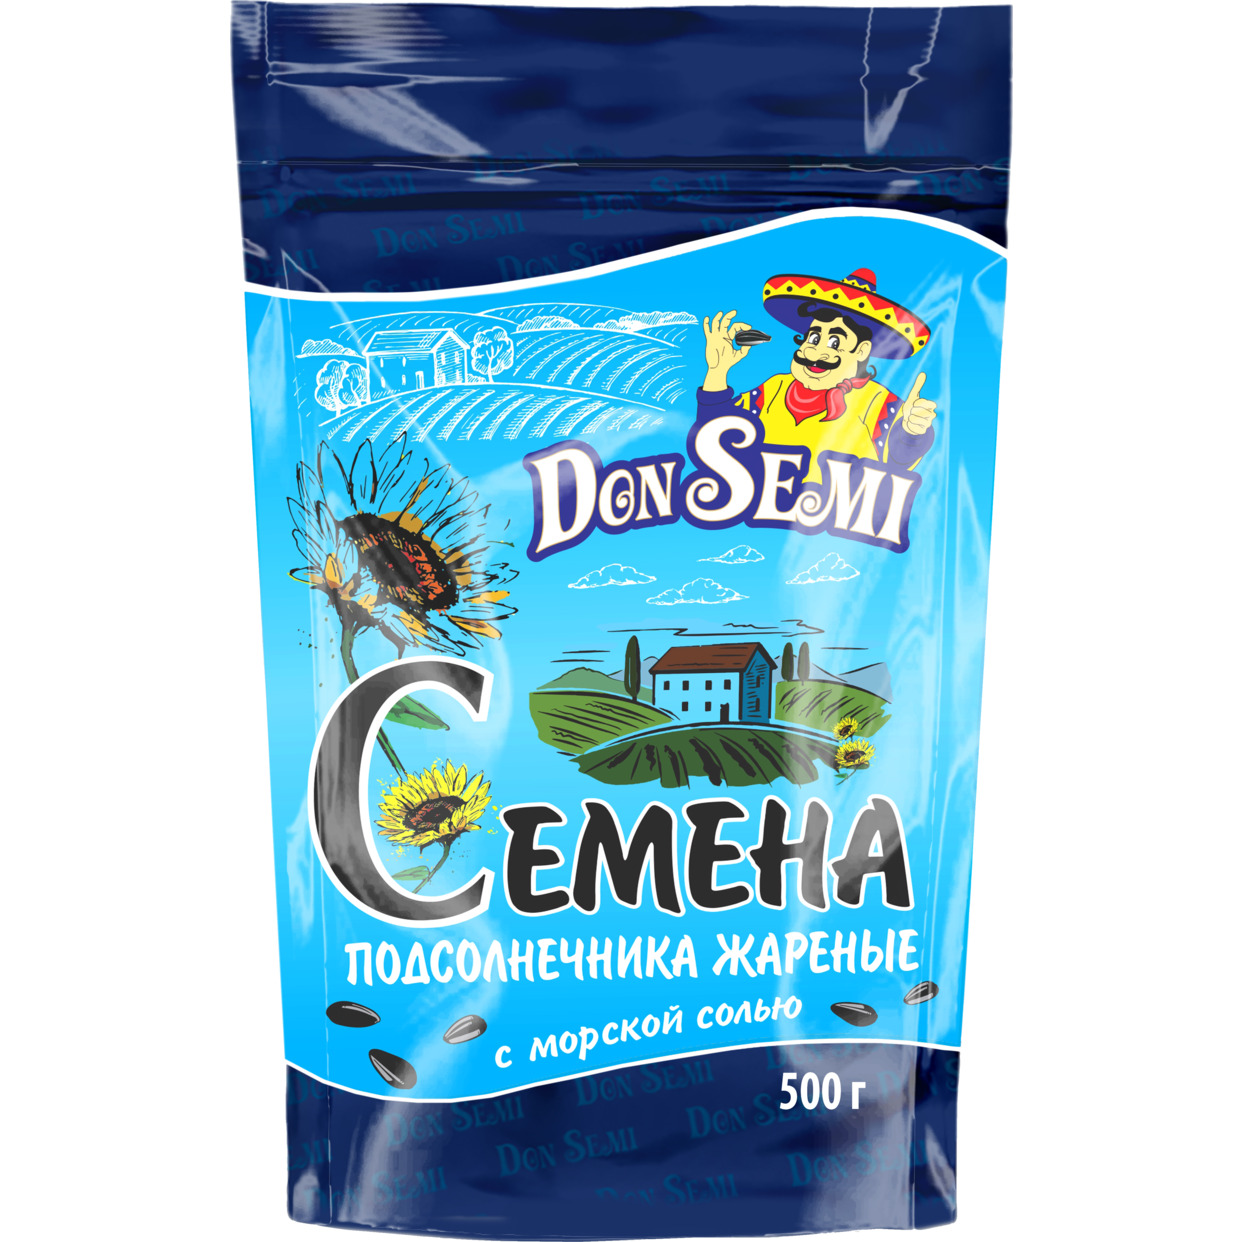 Don’ Semi Семена подсолнечника жареные с морской солью (дой-пак с замком зип-лок) 500 г